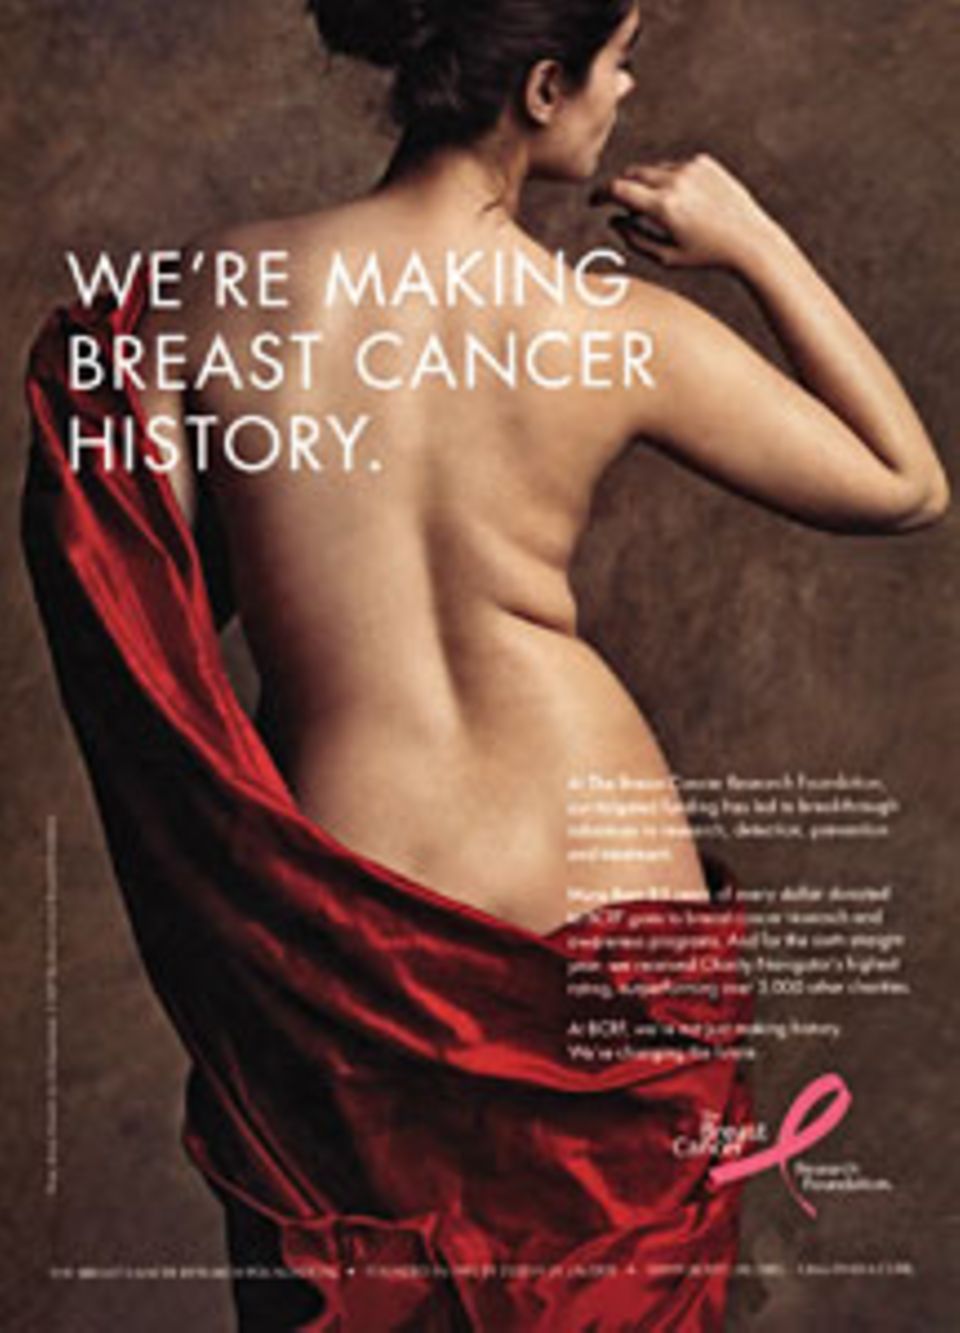 Die berühmte Anzeige der "Breast Cancer Foundation".